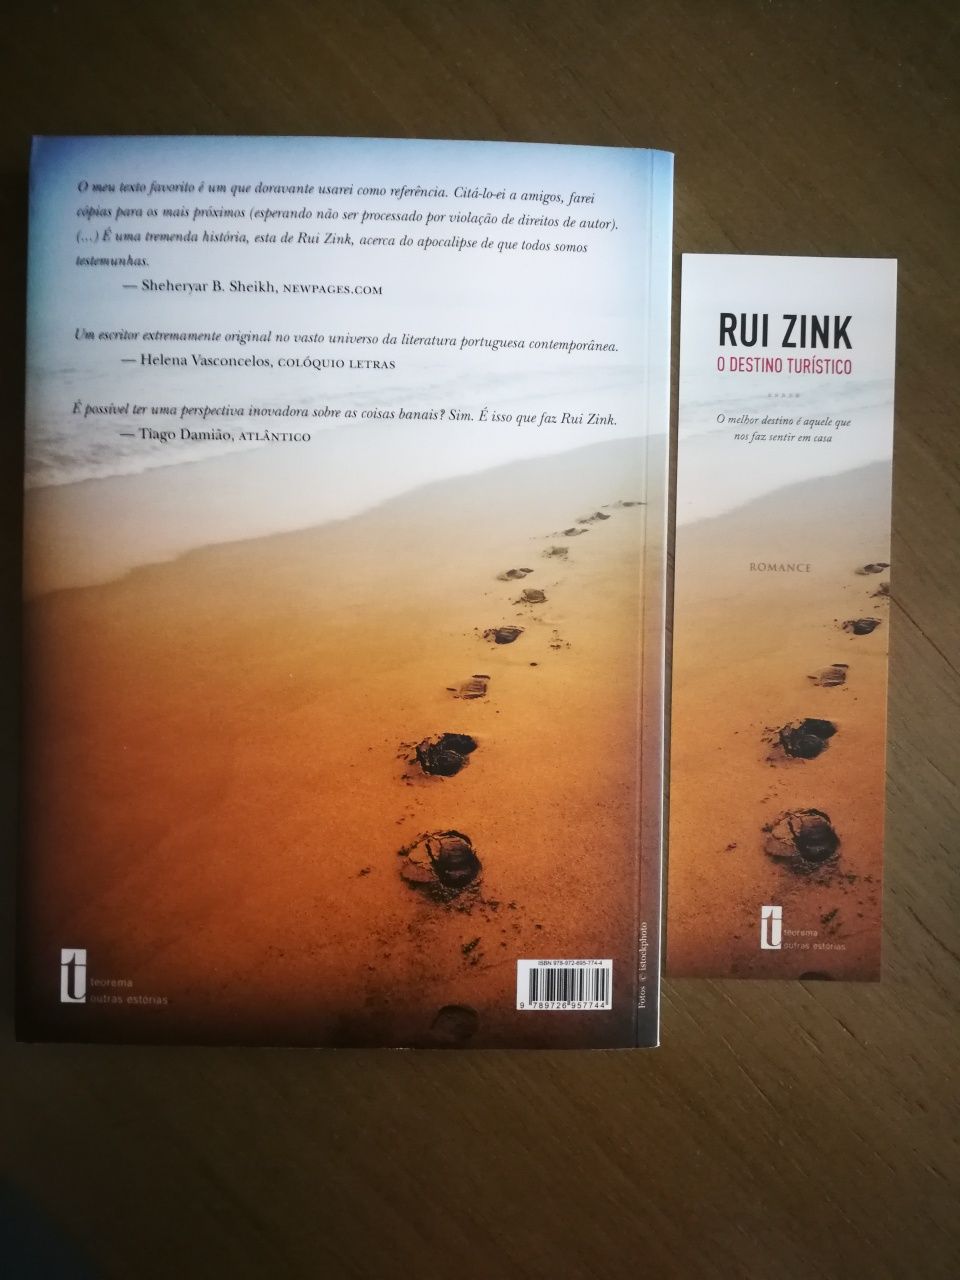 Livro "O destino turístico" de Rui Zink